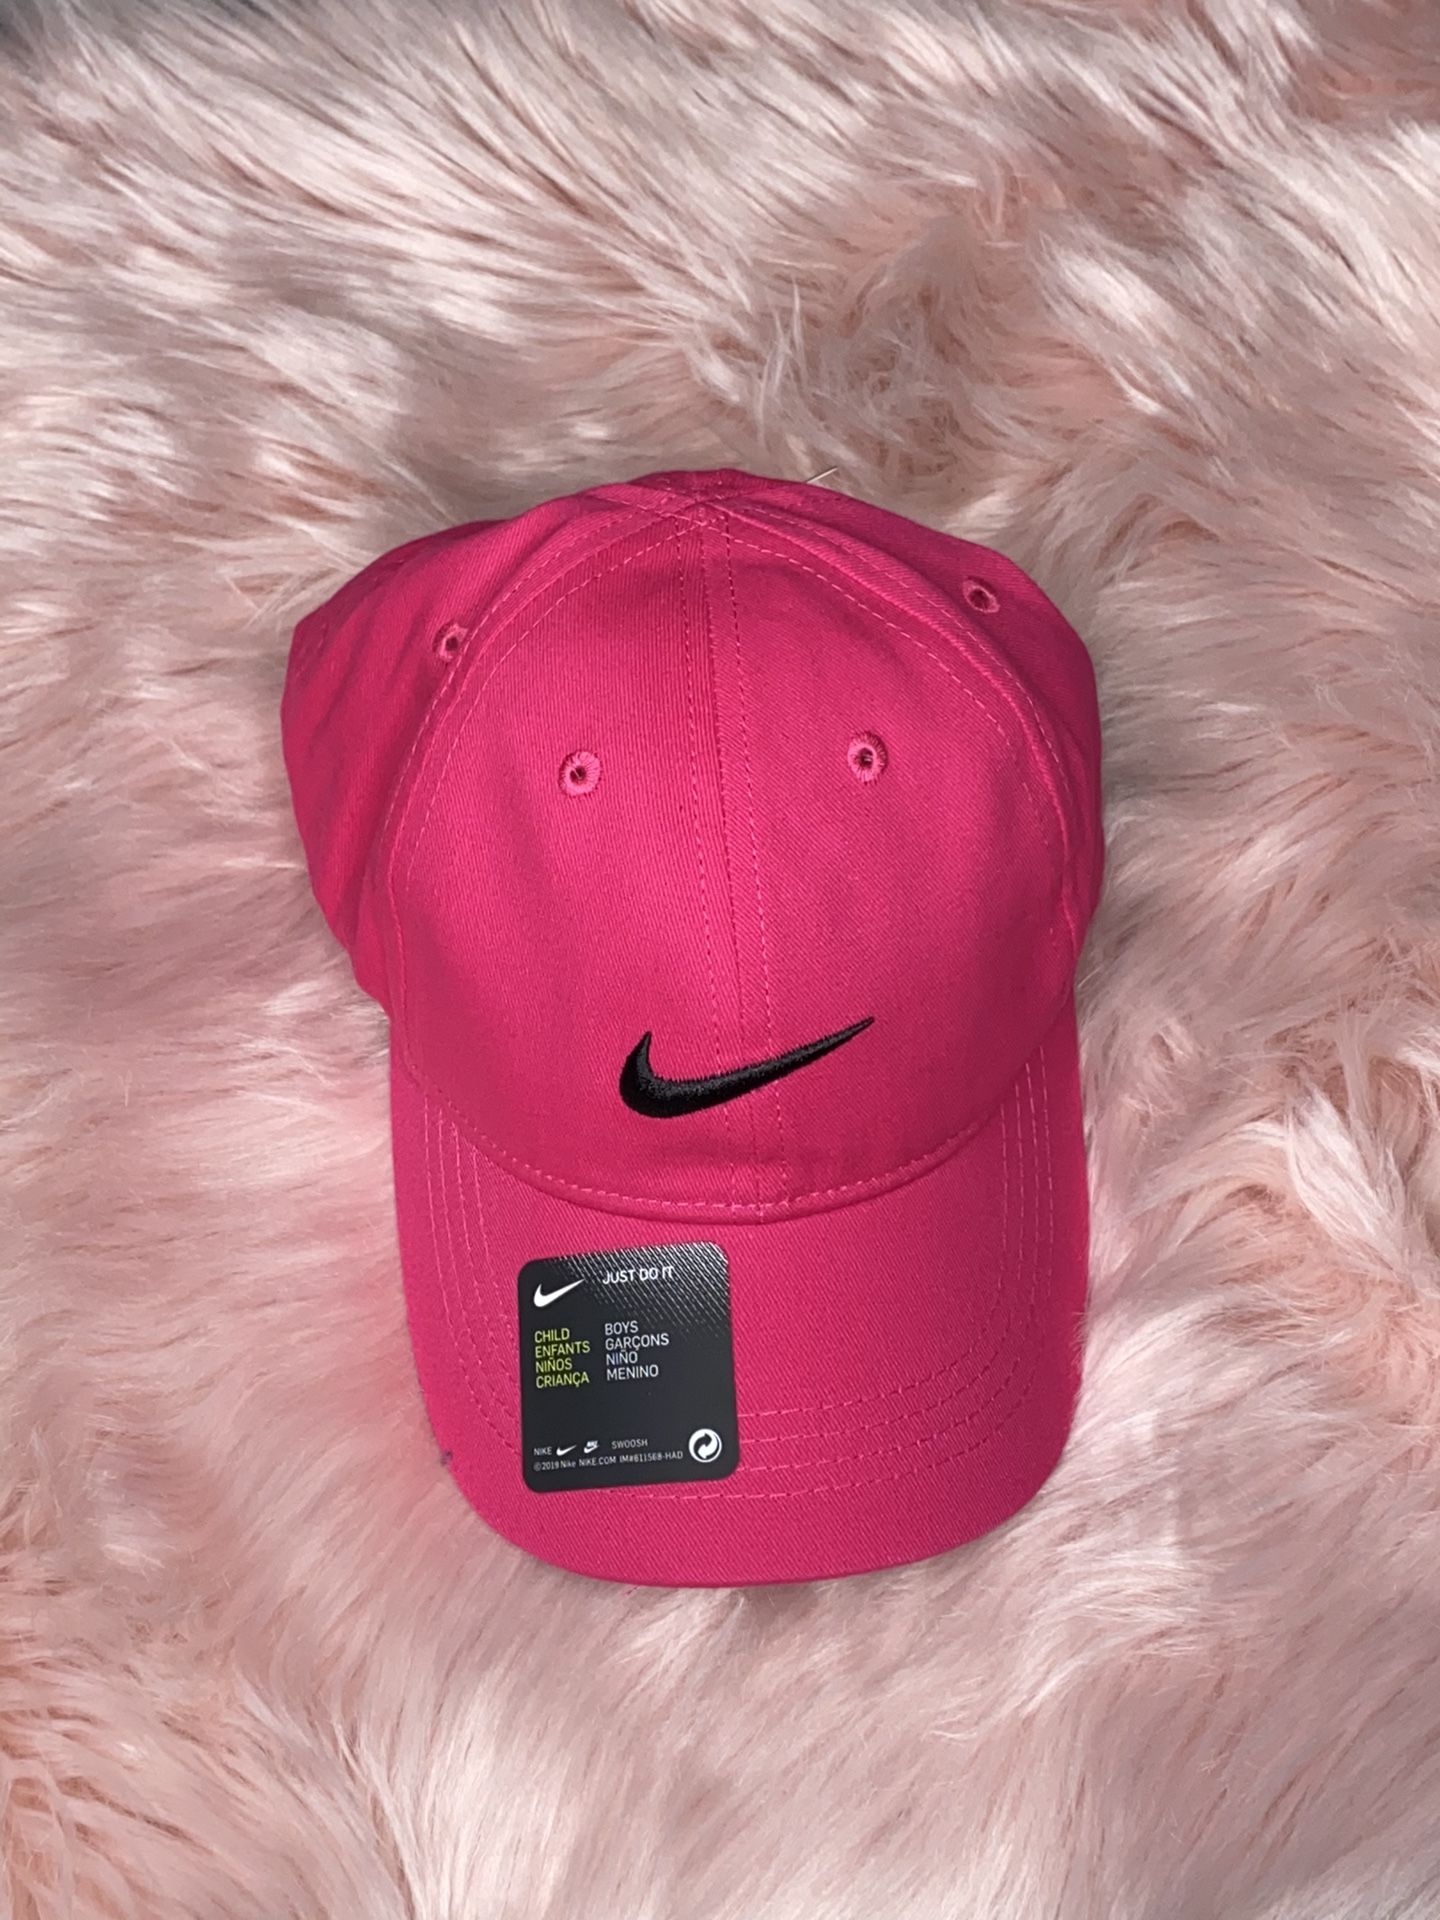 Nike hot pink adjustable hat